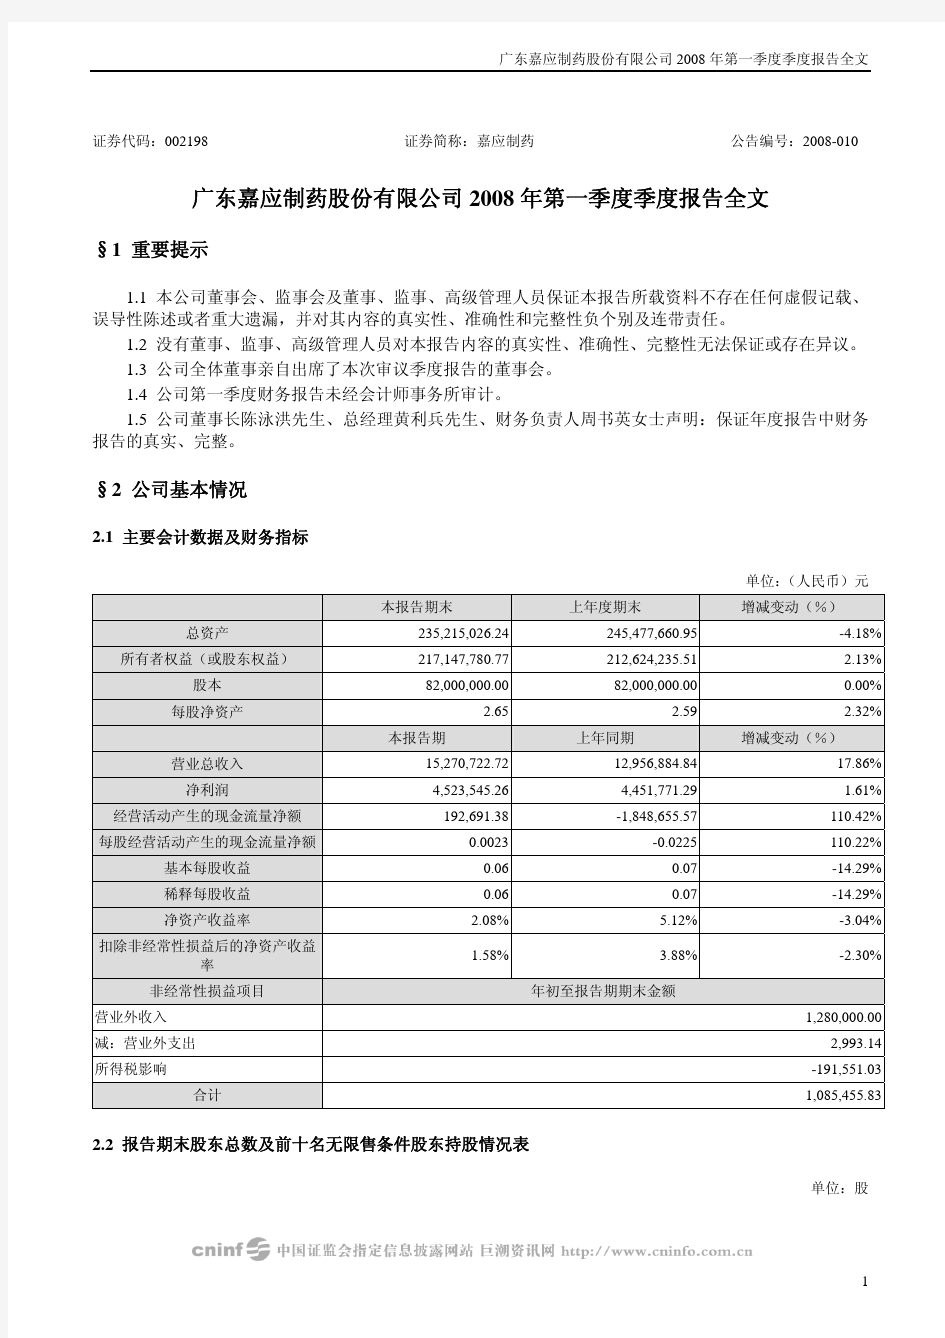 广东嘉应制药股份有限公司2008年第一季度季度报告全文